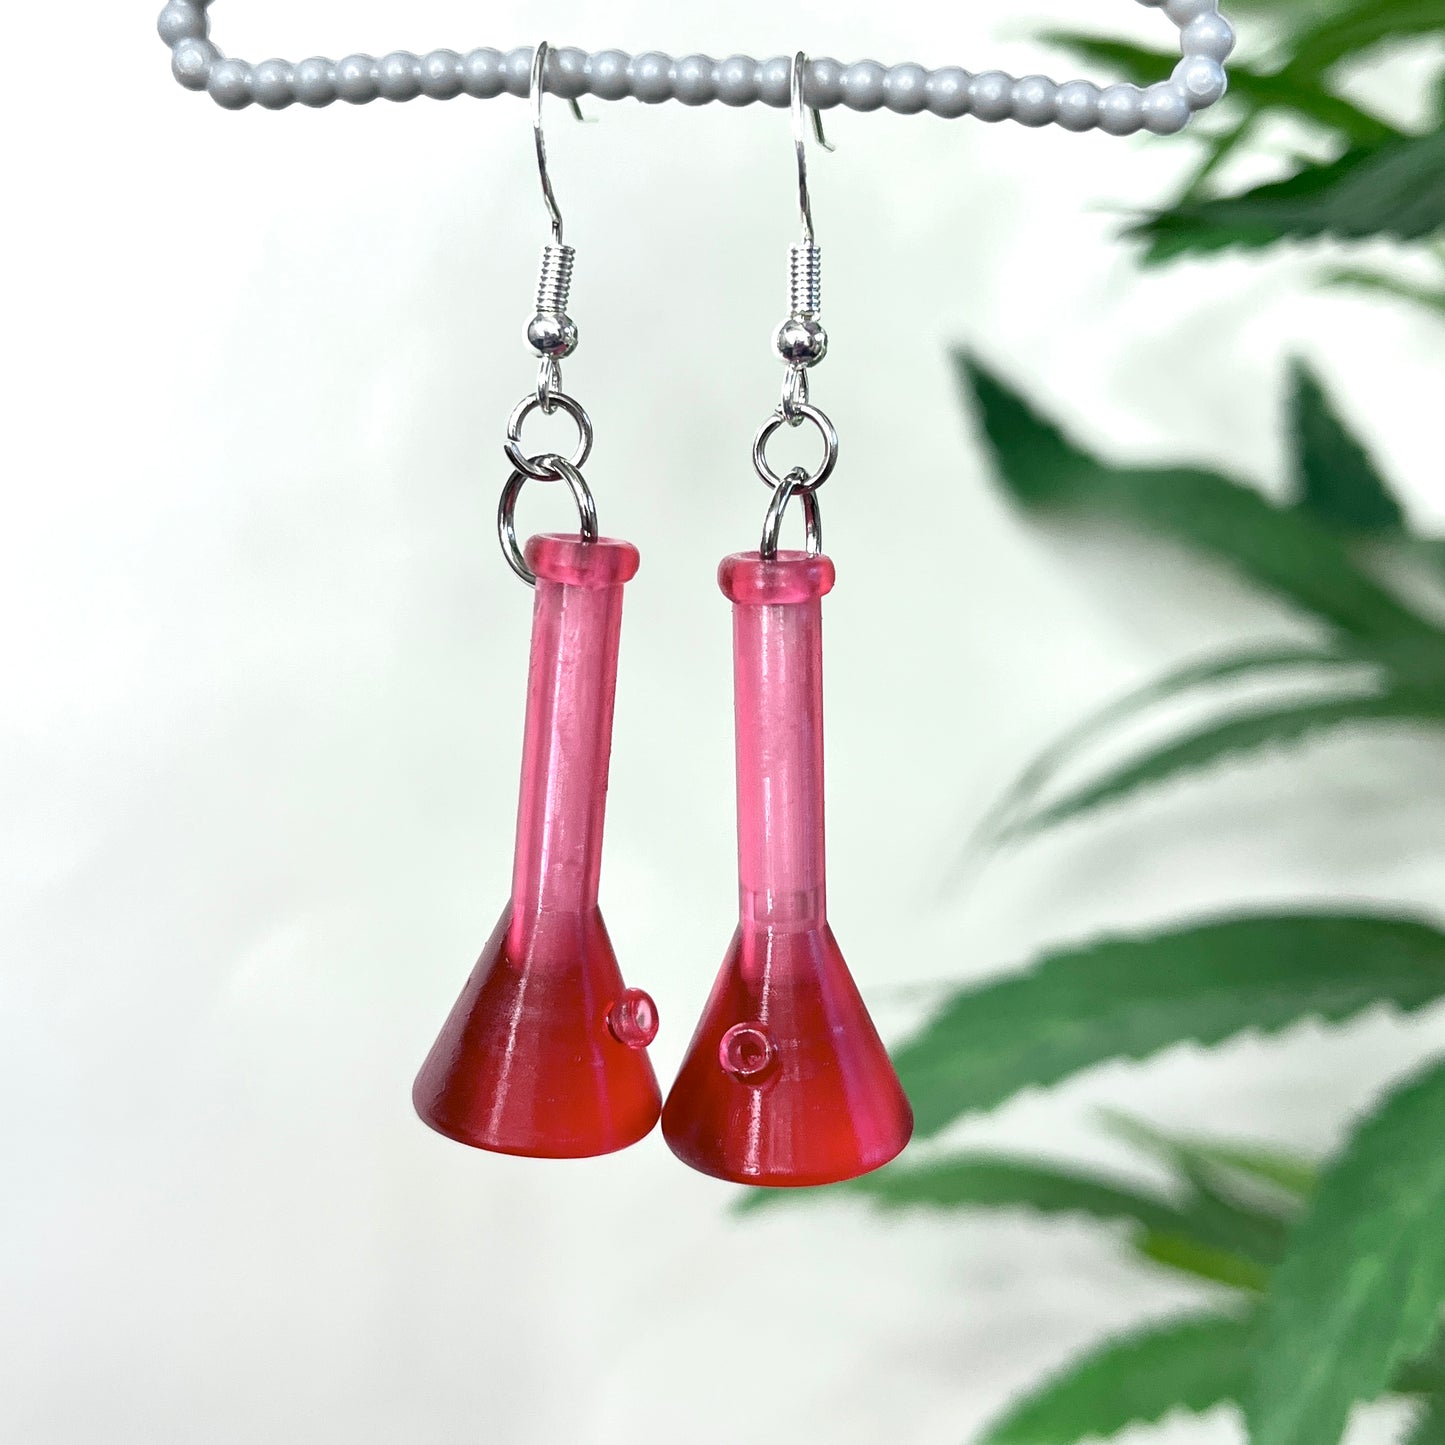 3D printed RESIN earrings